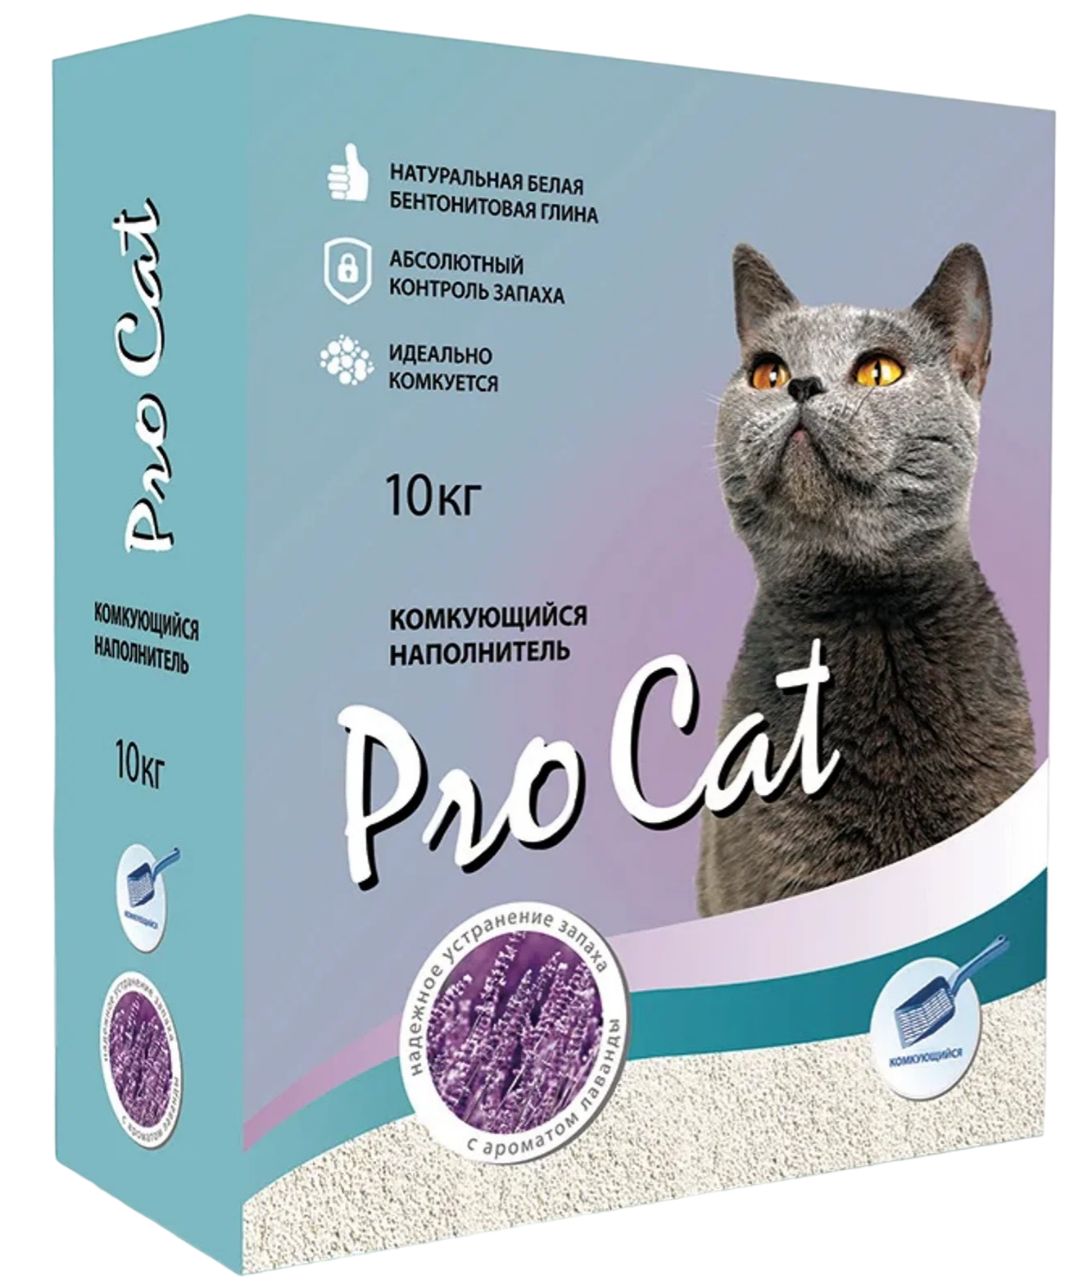 Комкующийся наполнитель Pro Cat бентонитовый, лаванда, 10 кг, 40 л